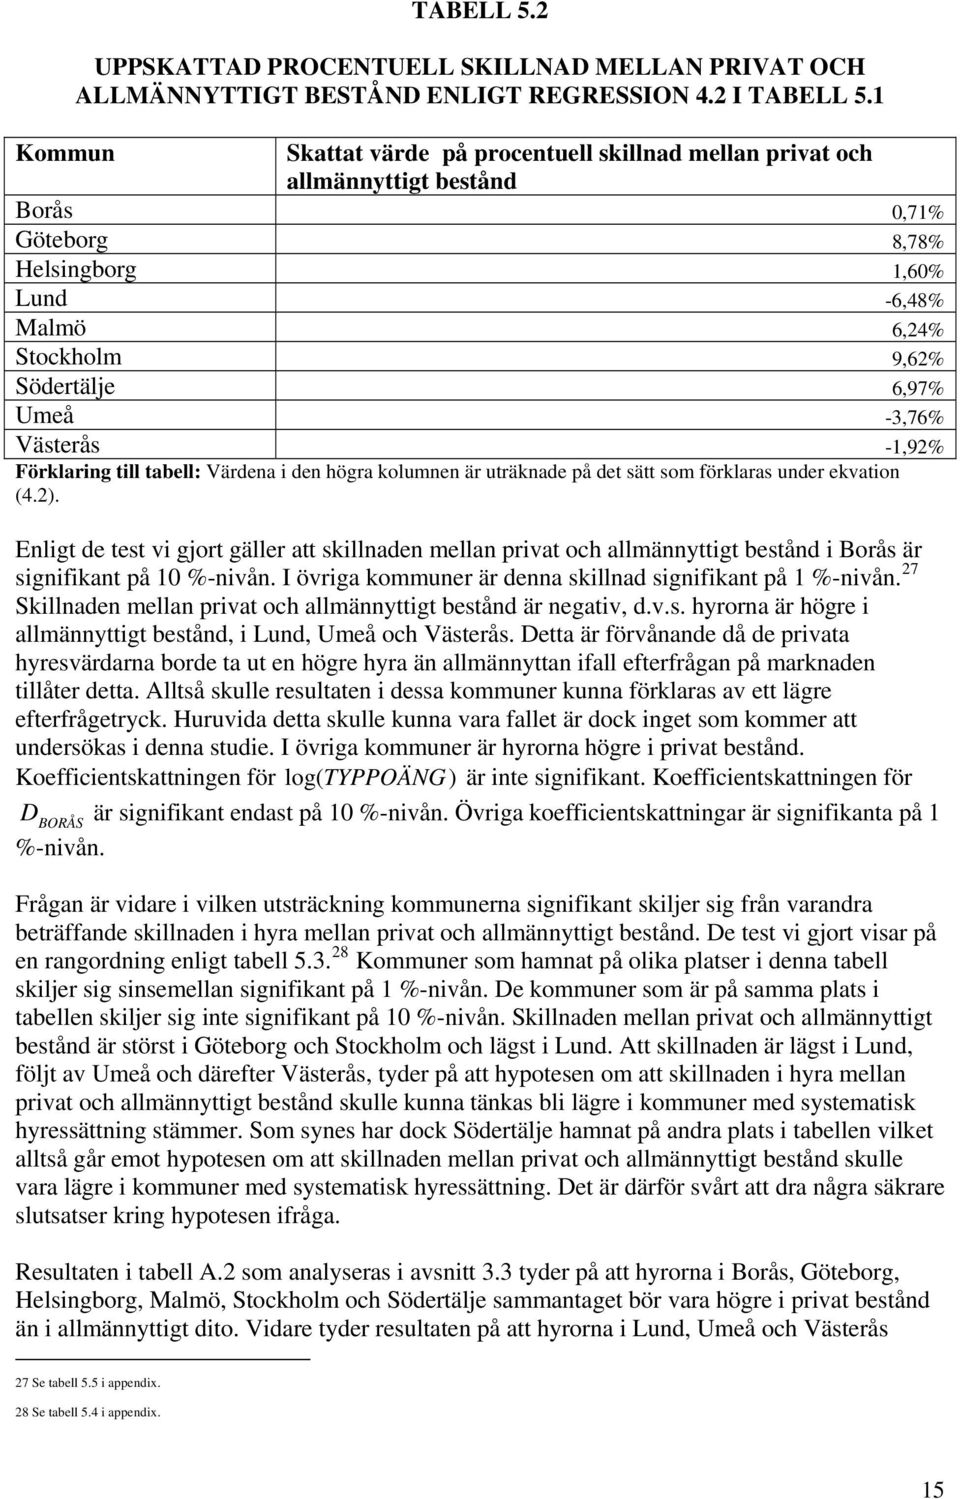 -3,76% Västerås -1,92% Förklaring till tabell: Värdena i den högra kolumnen är uträknade på det sätt som förklaras under ekvation (4.2).